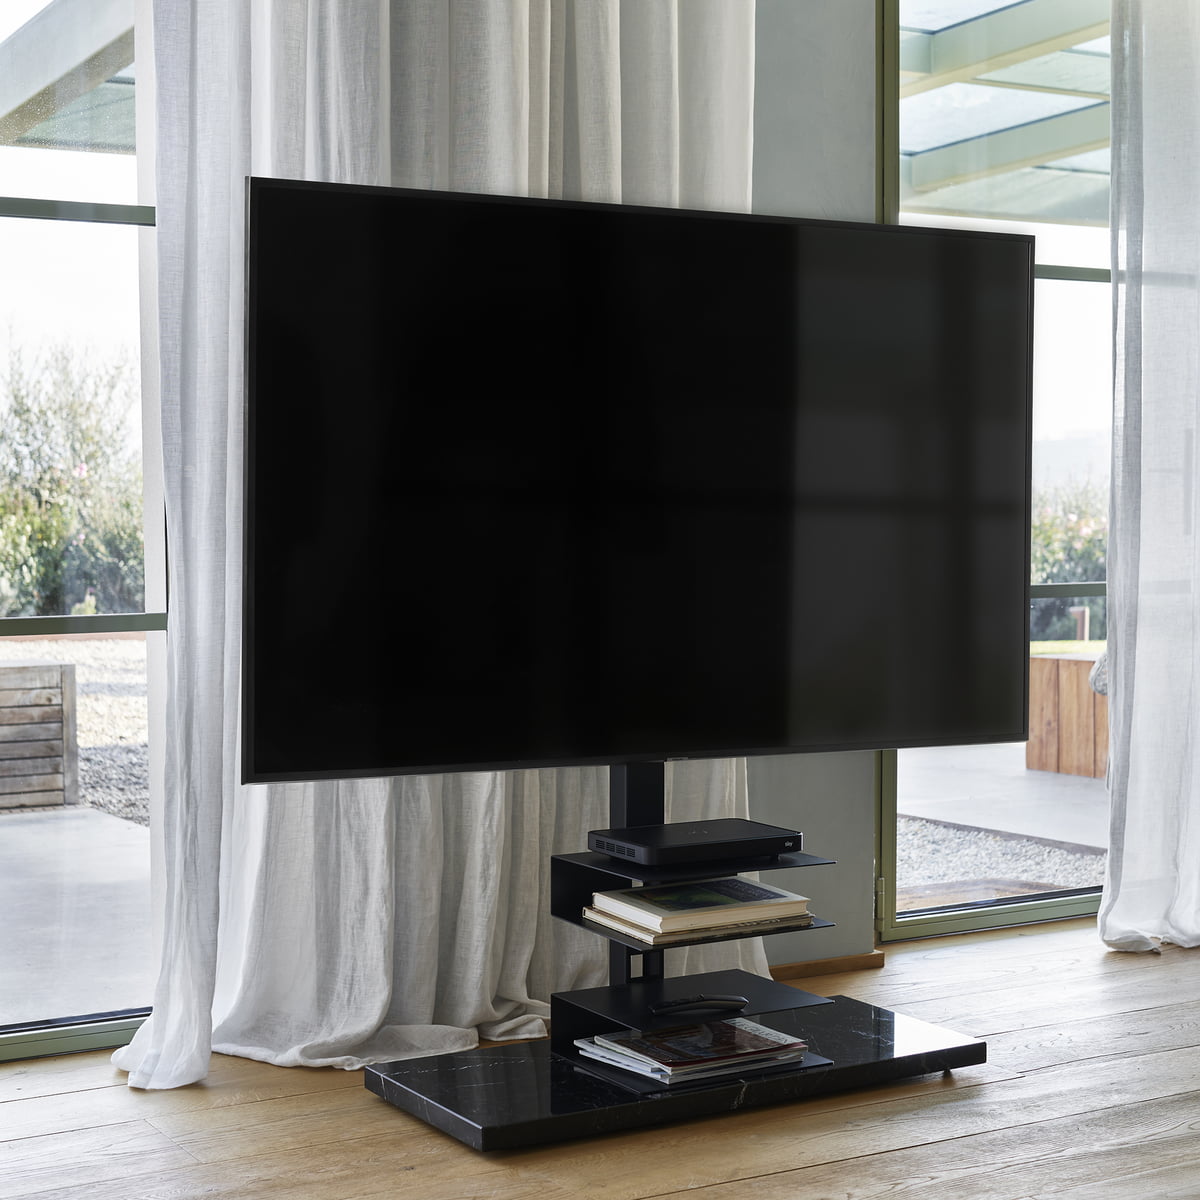 Opinion Ciatti - Ptolomeo TV Smart TV stand